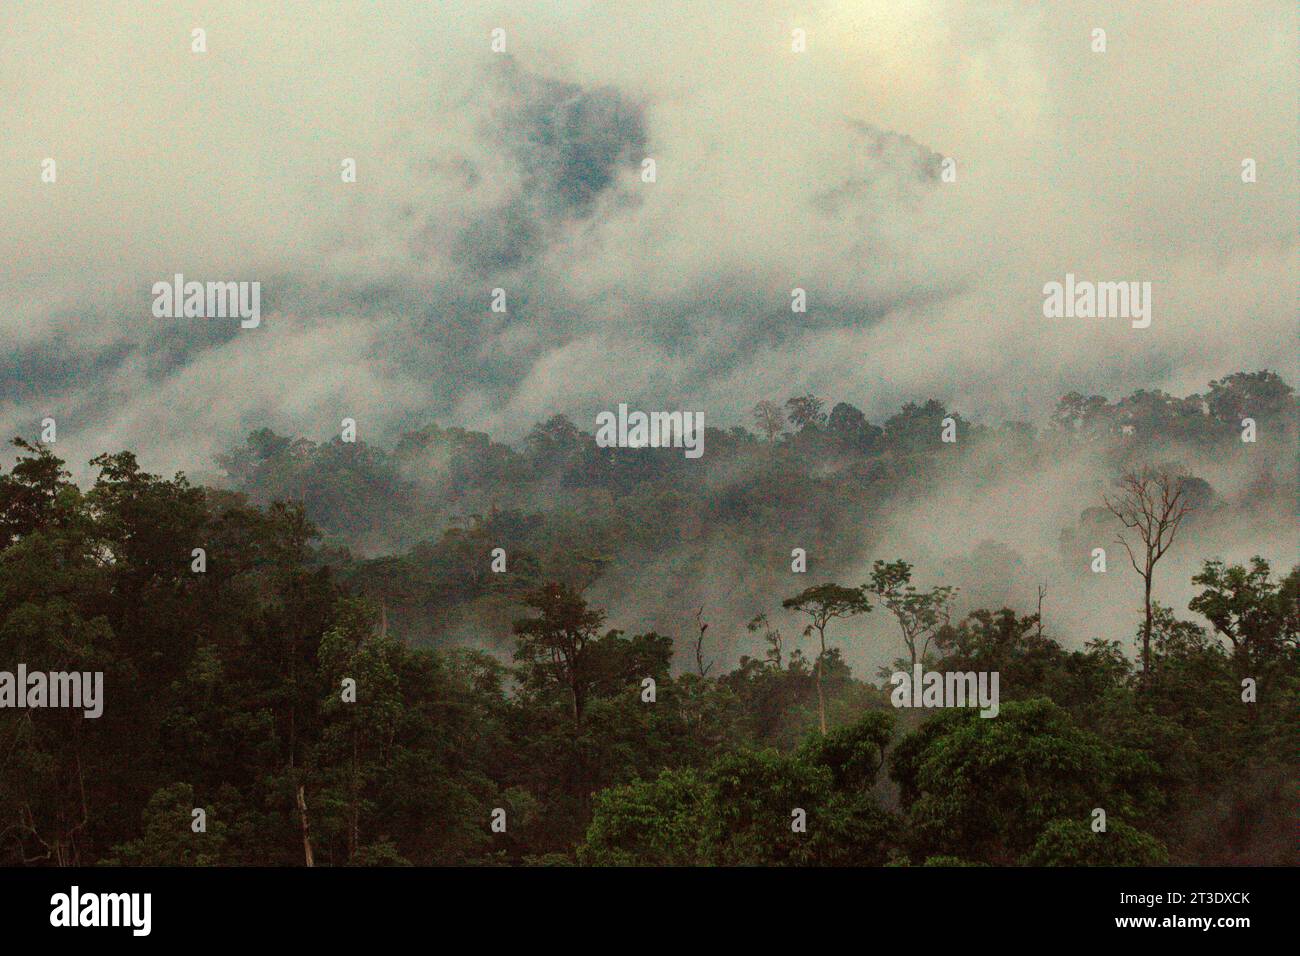 Paesaggio di una foresta pluviale ai piedi del Monte Tangkoko e Duasudara (Dua Saudara) a Bitung, Sulawesi settentrionale, Indonesia. Una nuova relazione della Wildlife Conservation Society ha rivelato che si stima che le foreste tropicali ad alta integrità rimuovano e immagazzinano circa 3,6 miliardi di tonnellate di CO2 all'anno (nette) dall'atmosfera, ma per proteggerli gli stakeholder devono salvare i grandi frugivori. le specie di fauna selvatica di grandi dimensioni, in particolare i mangiatori di frutta come primati, carpini e altri, disperdono grandi semi da specie di alberi con un'elevata capacità di stock di carbonio, secondo gli scienziati. Foto Stock